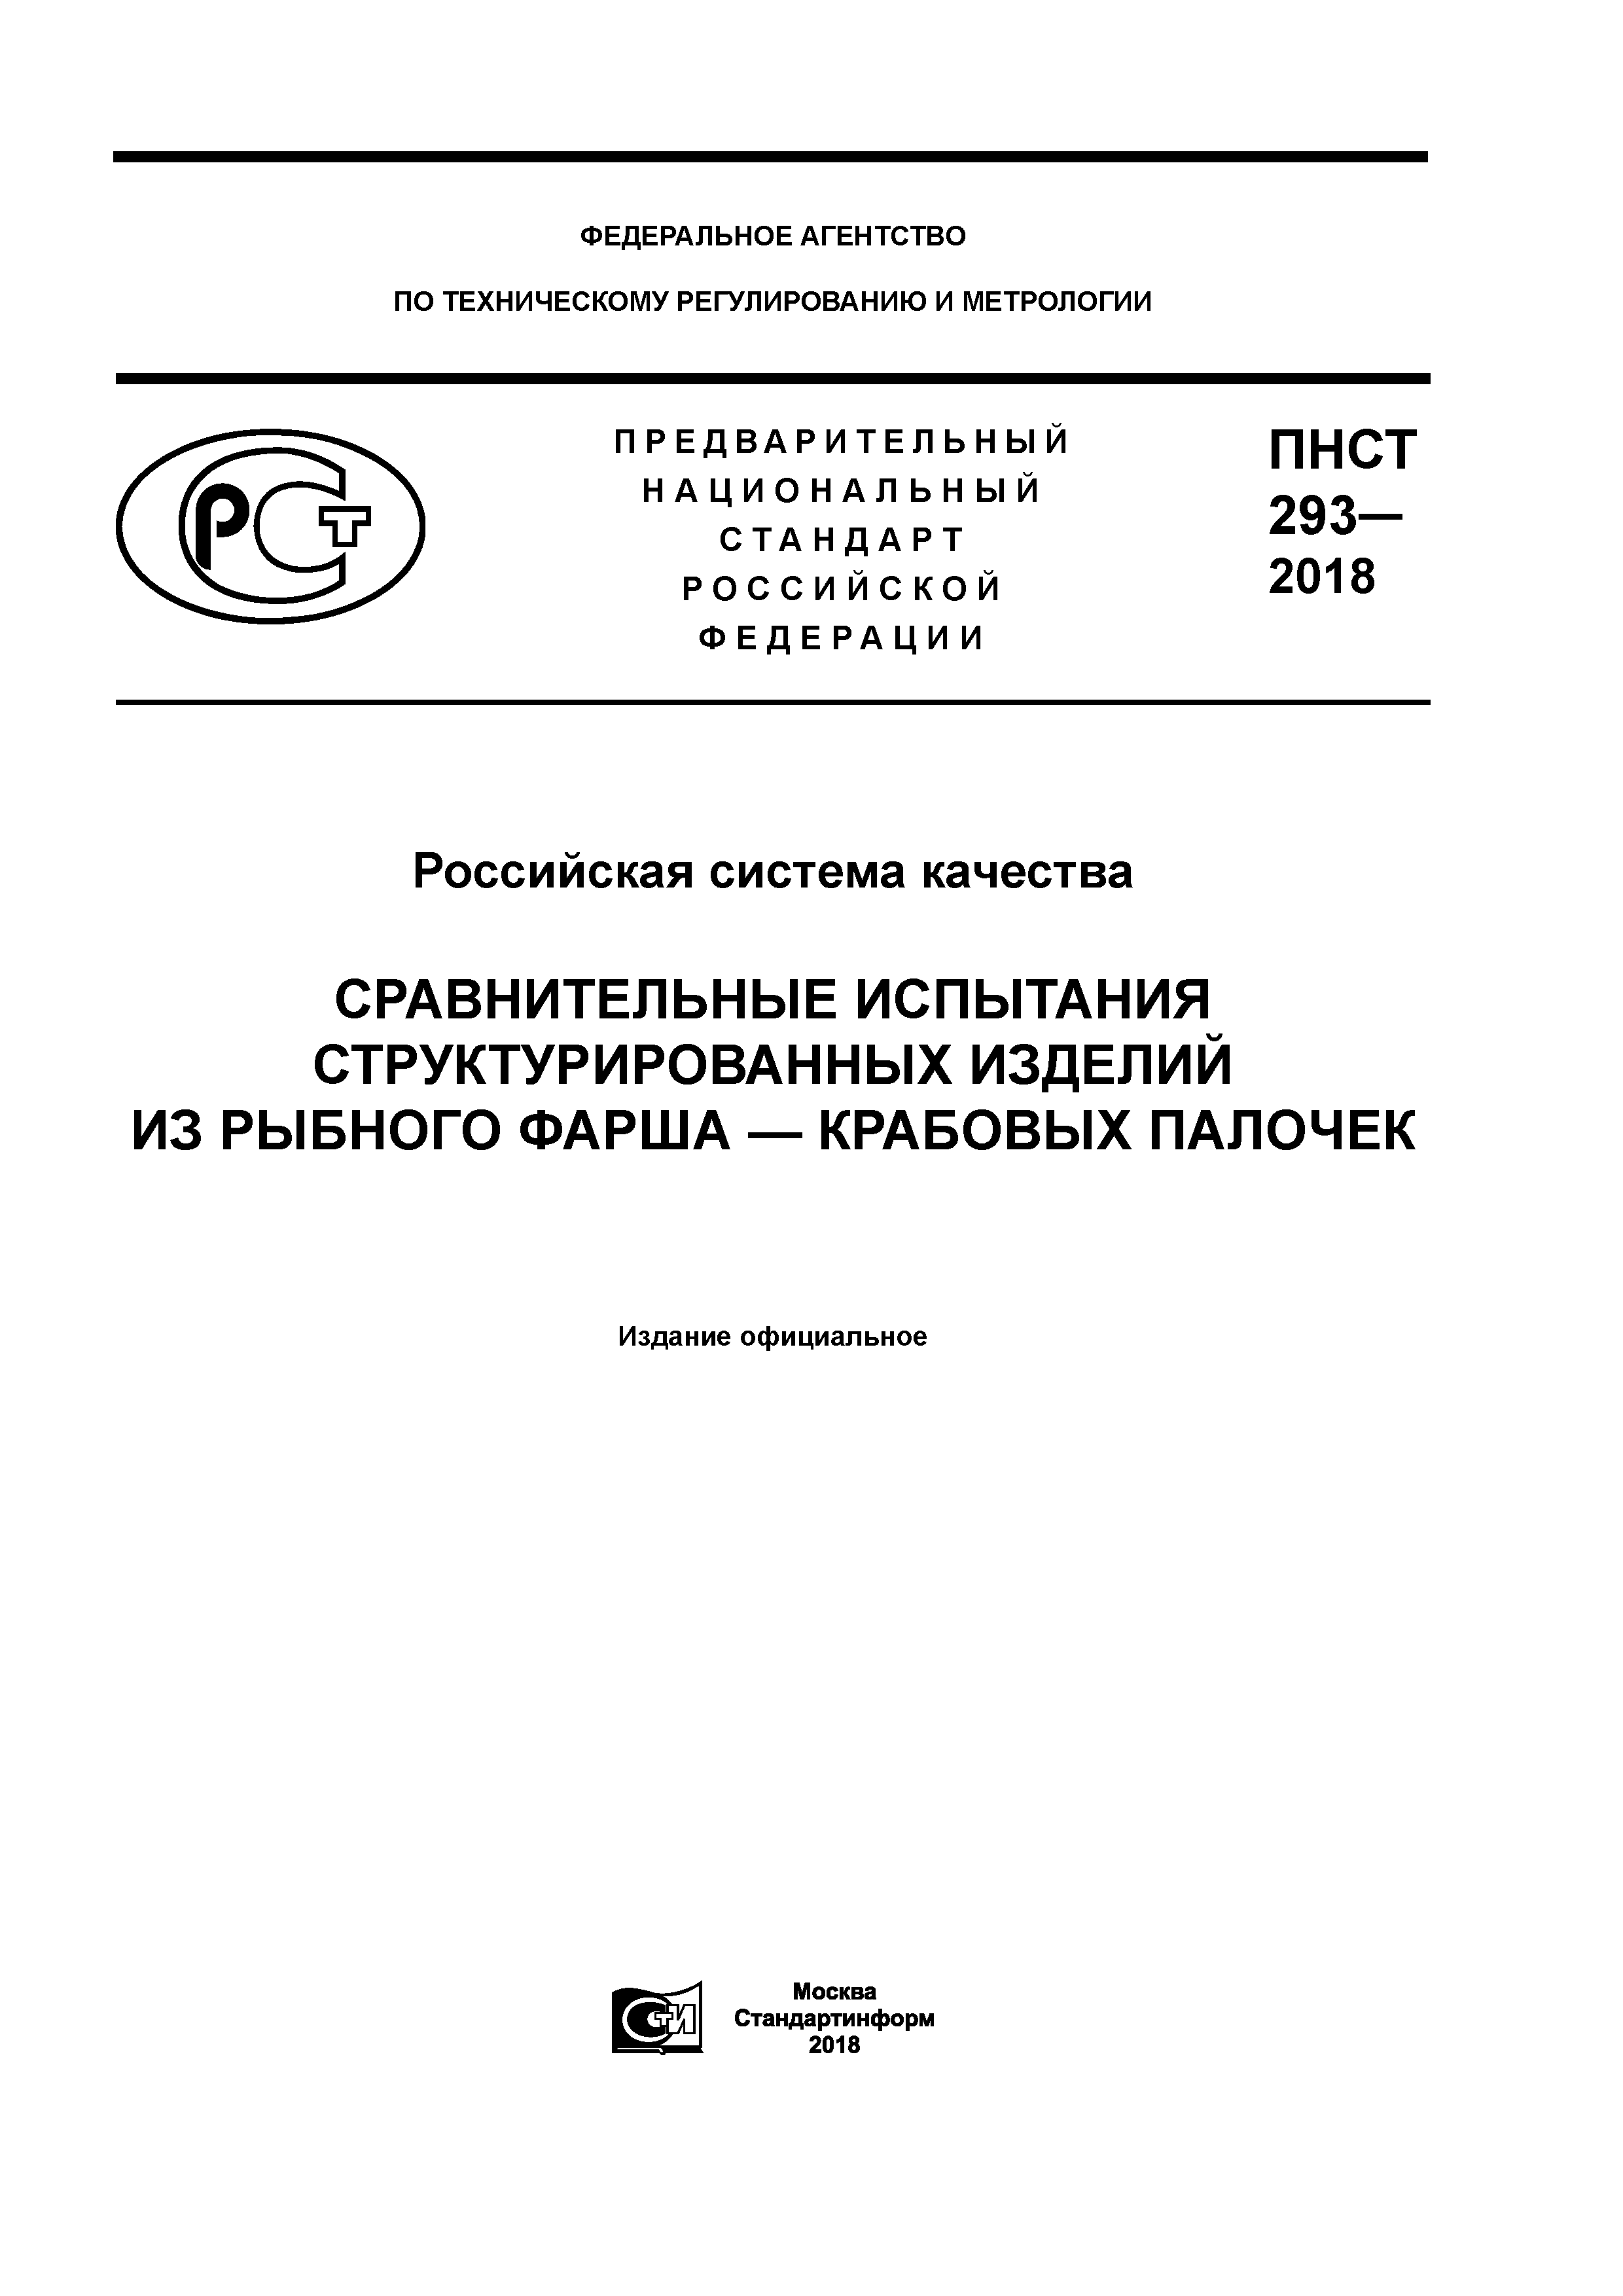 ПНСТ 293-2018